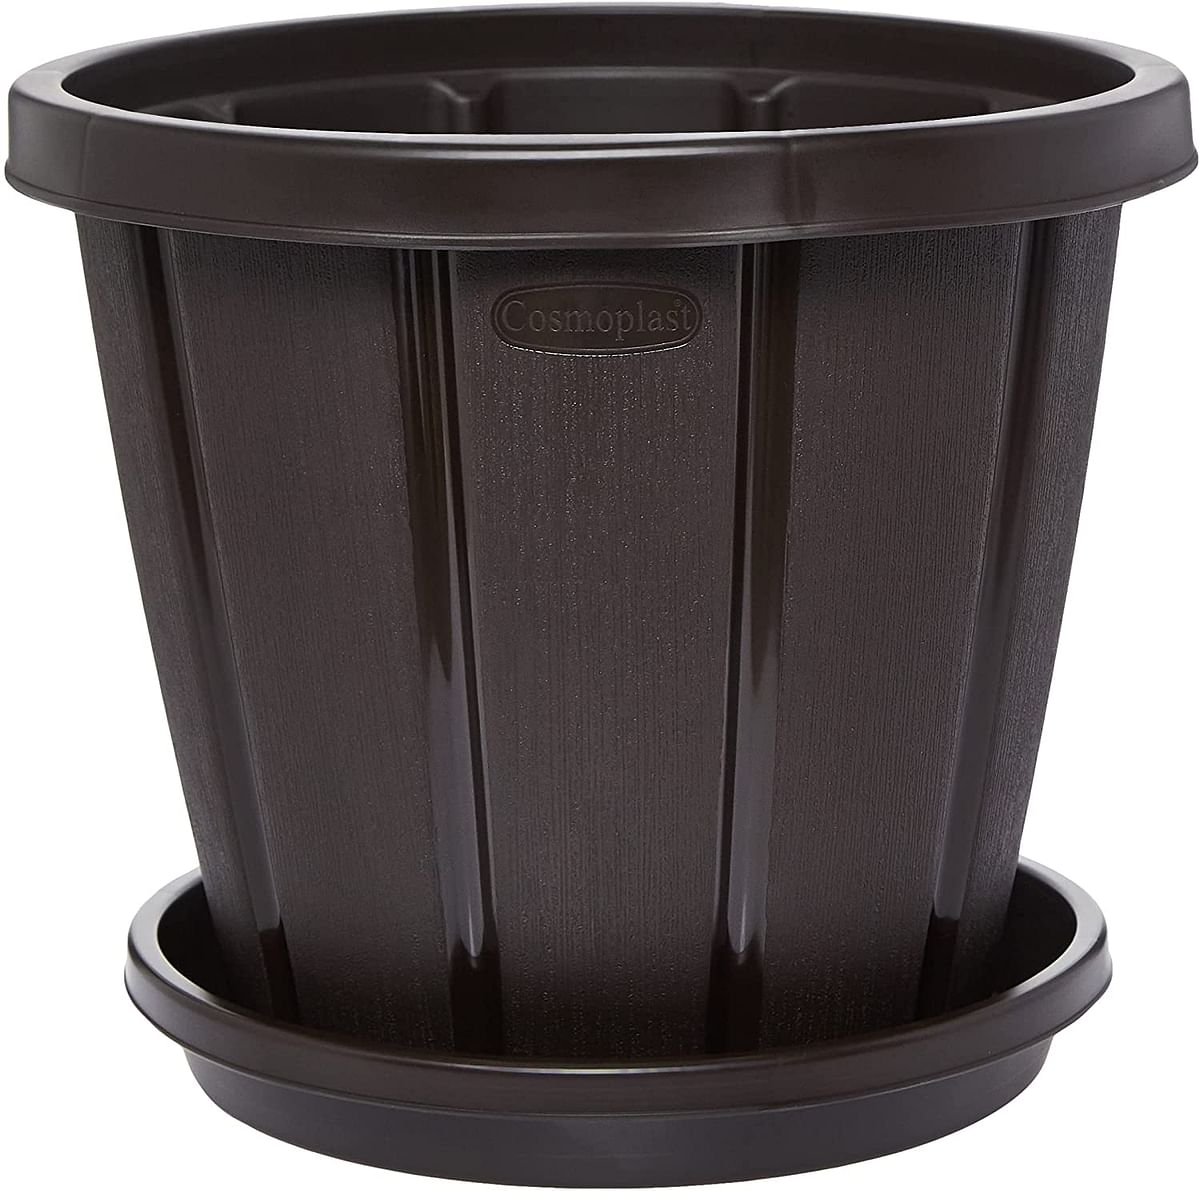 Cosmoplast Plastic Cedargrain Round Flowerpot 16” with Tray, Dark Brown, 16-inches